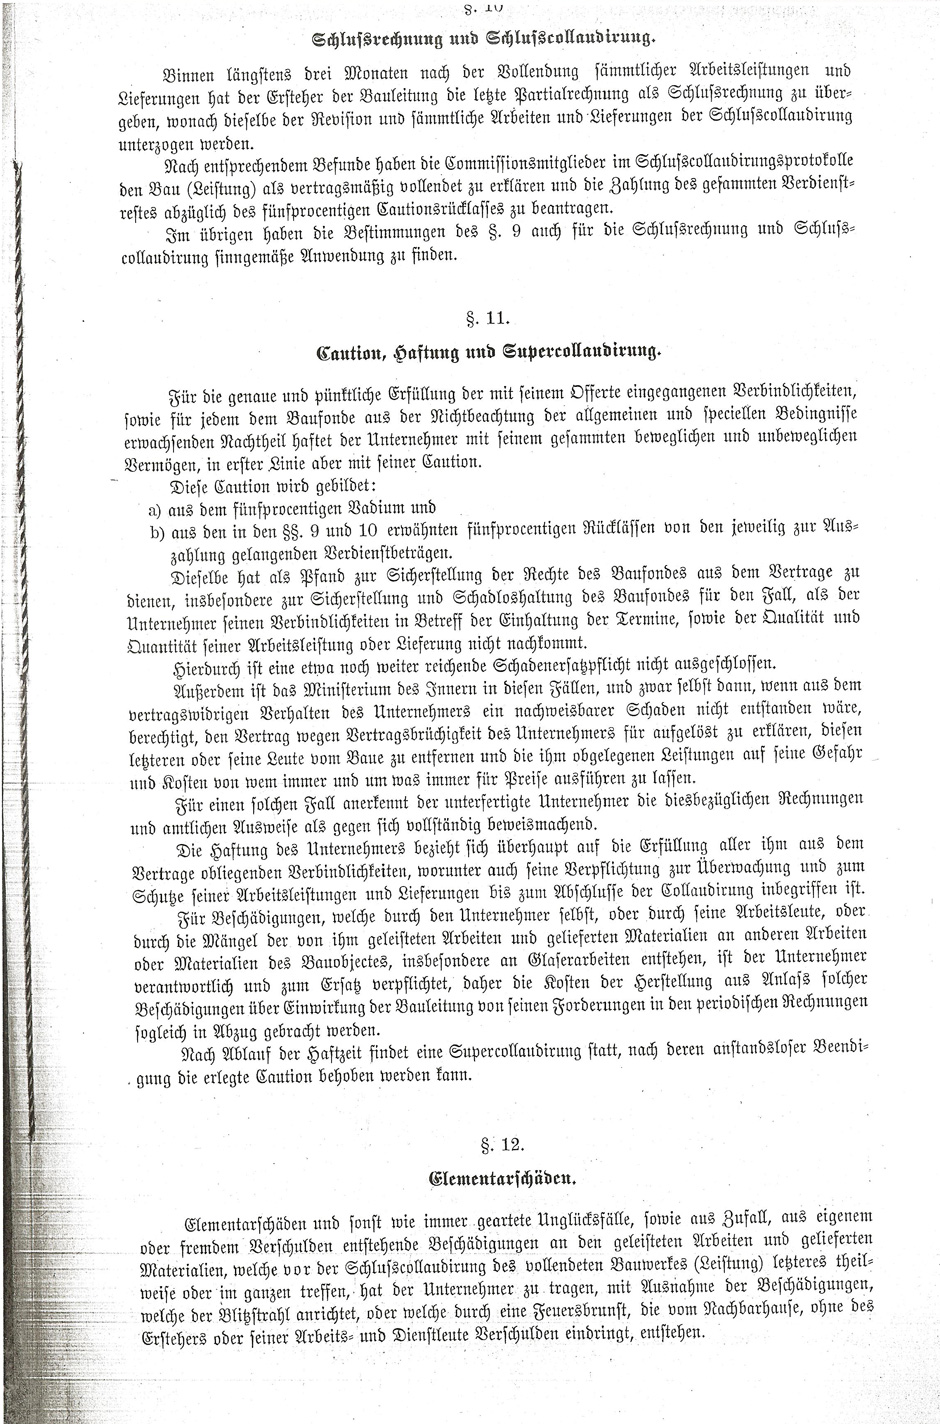 Lieferung von Dachkonstruktionen für das Haus-Hof-Staatsarchiv, Blatt 12